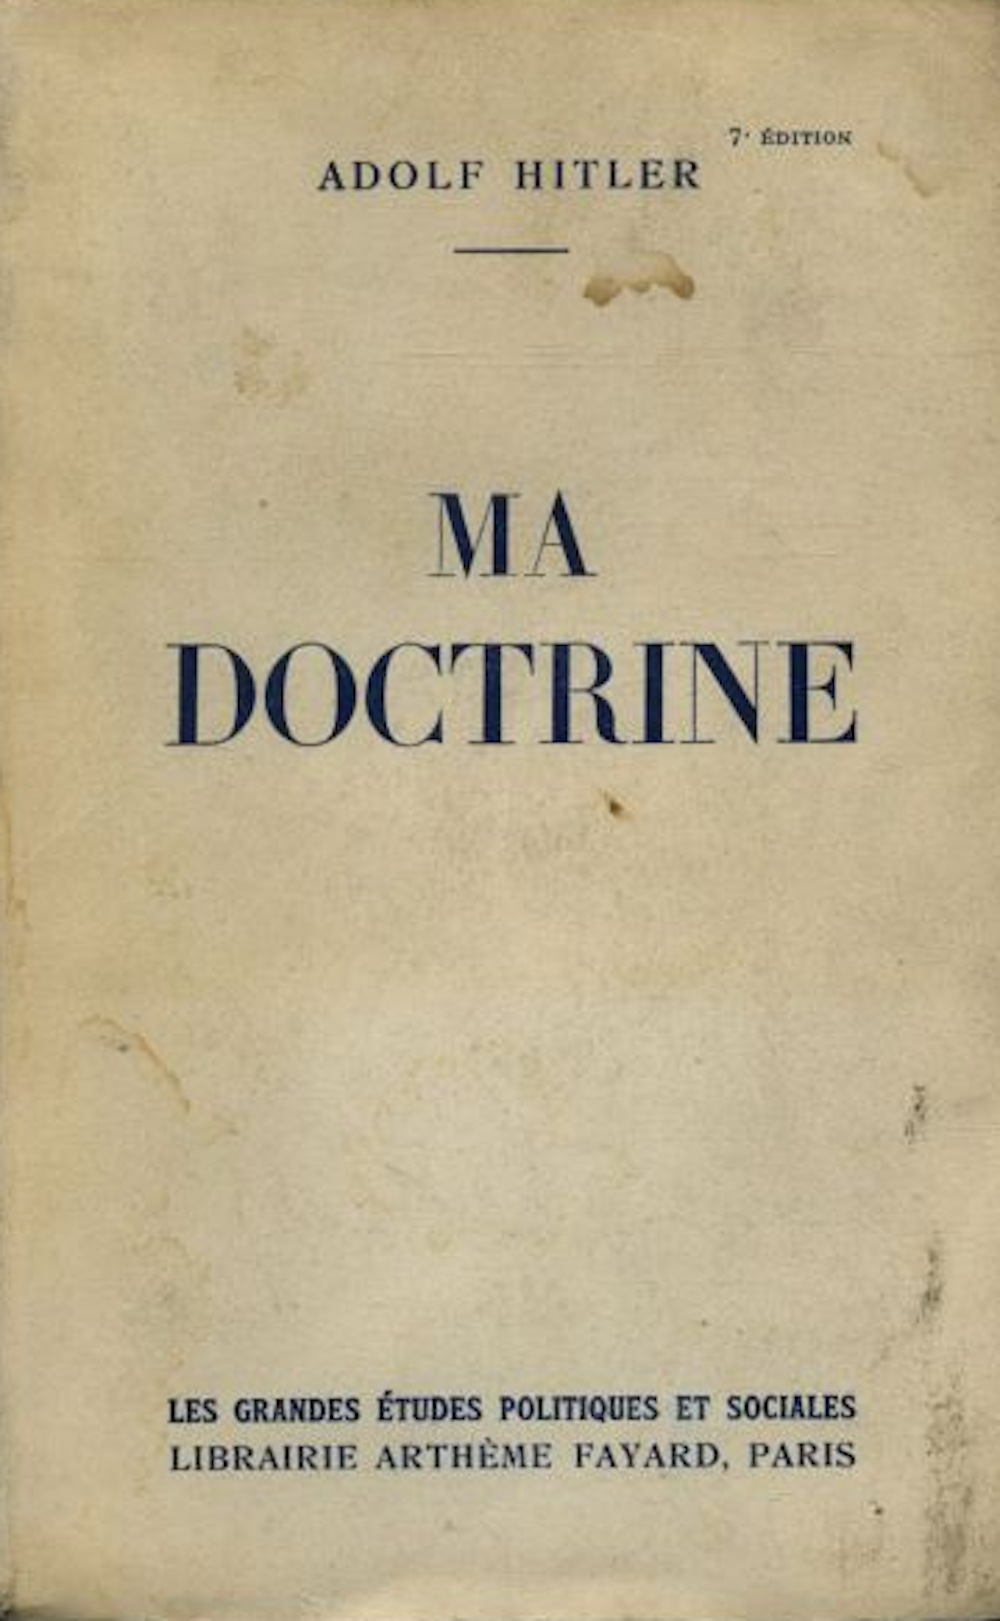 La curieuse histoire de « Mein Kampf » en français, 1934-2016